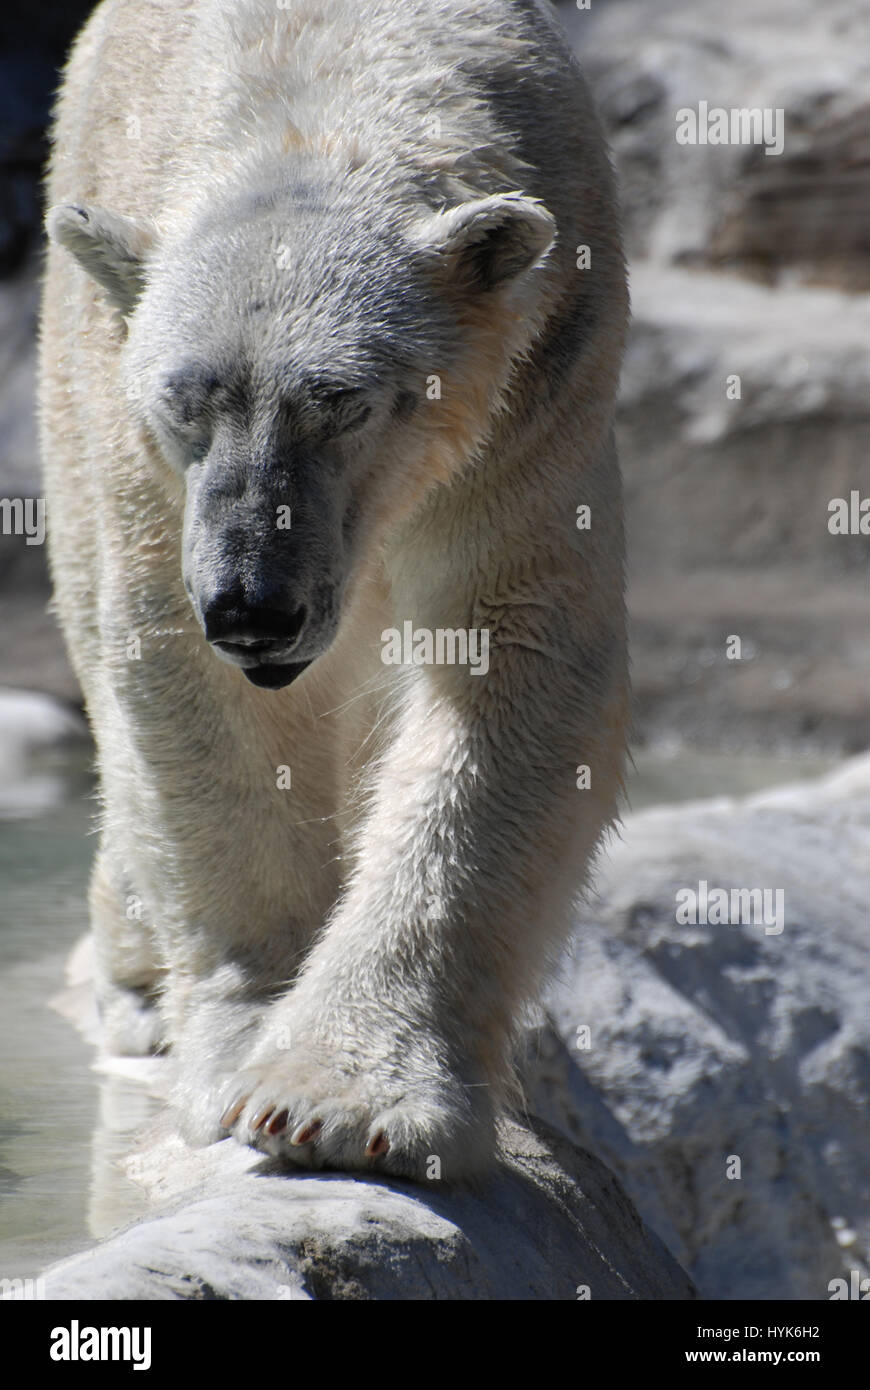 Molto grandi zampe su un orso polare percorrendo a piedi. Foto Stock